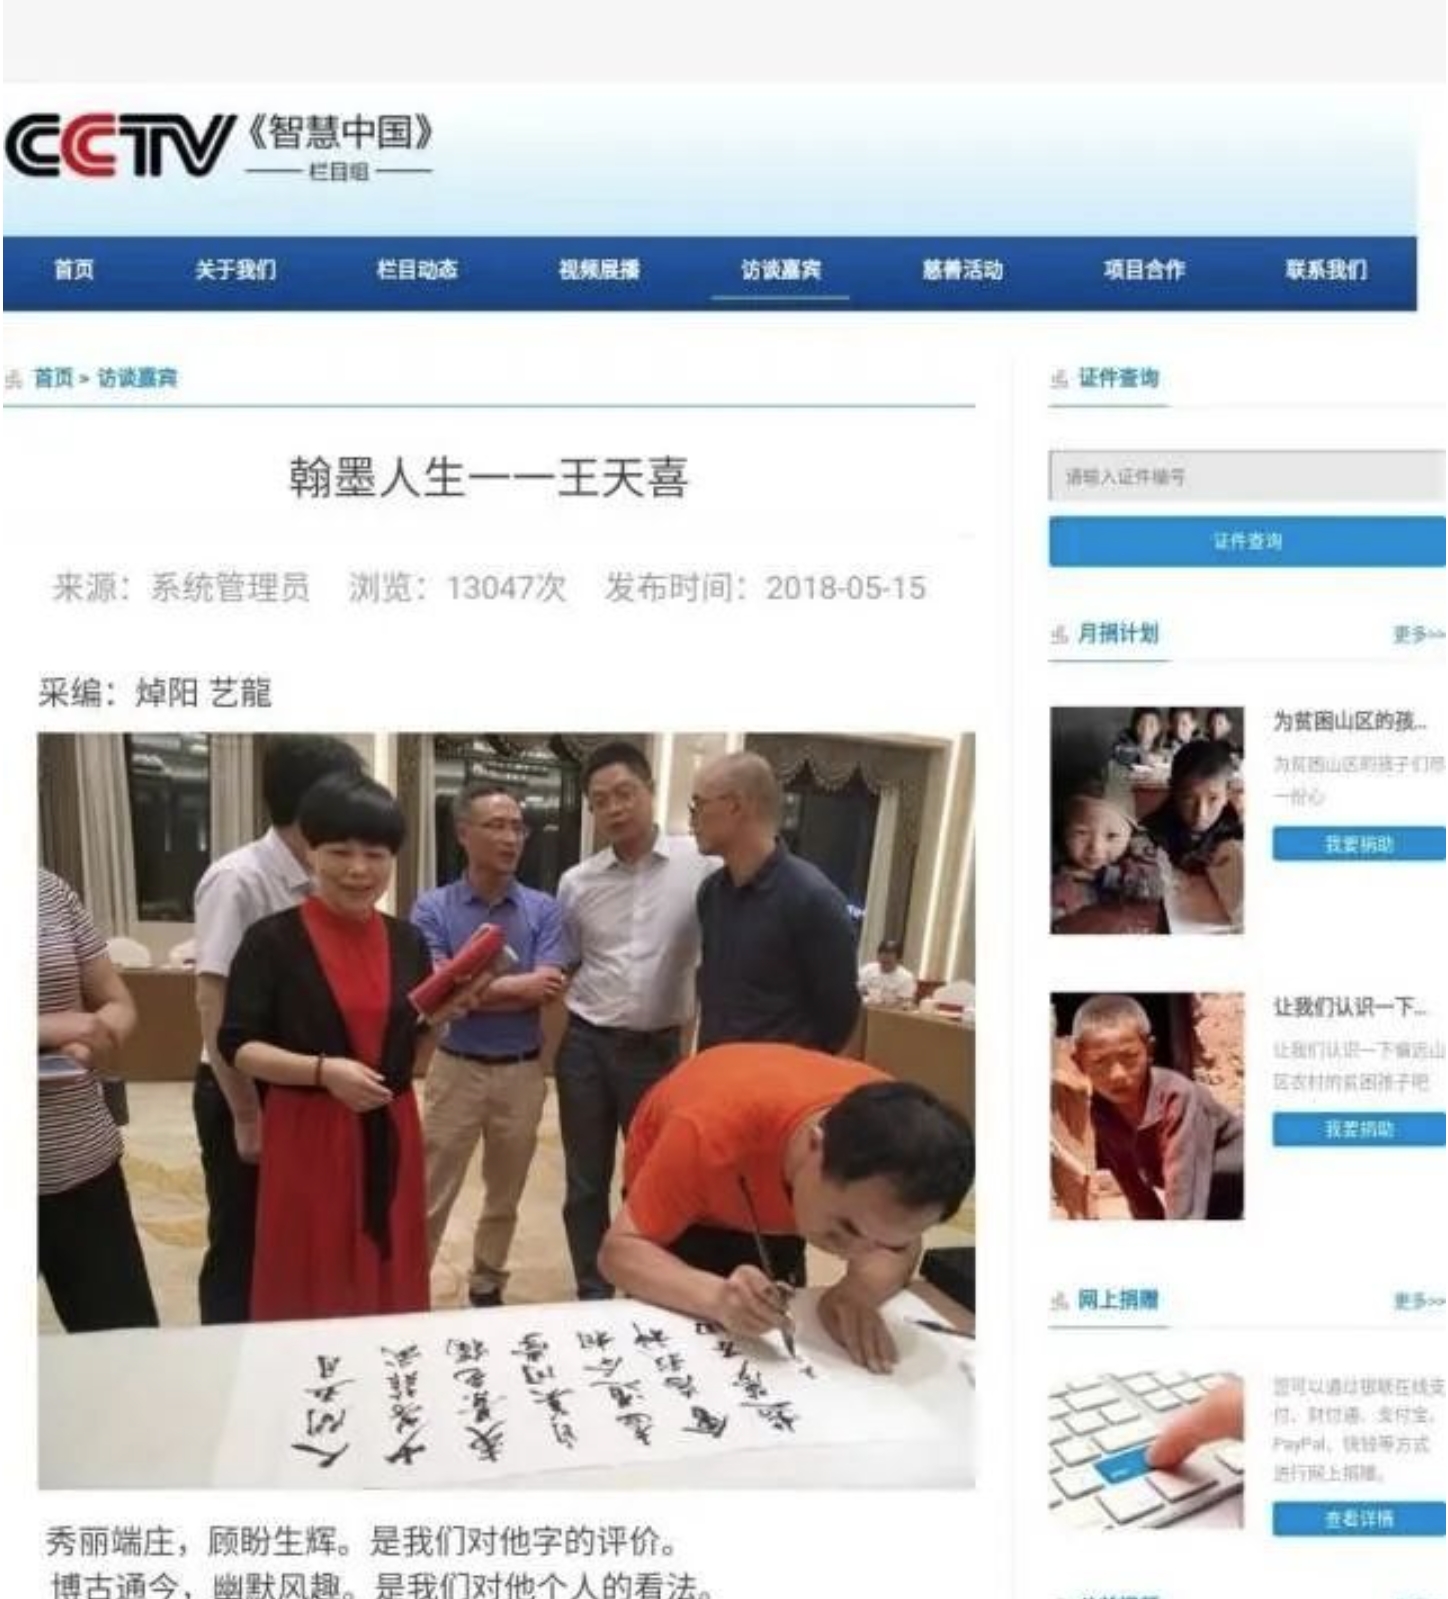 汉呈字库致力于打造中华互联网元宇宙字体库著名品牌